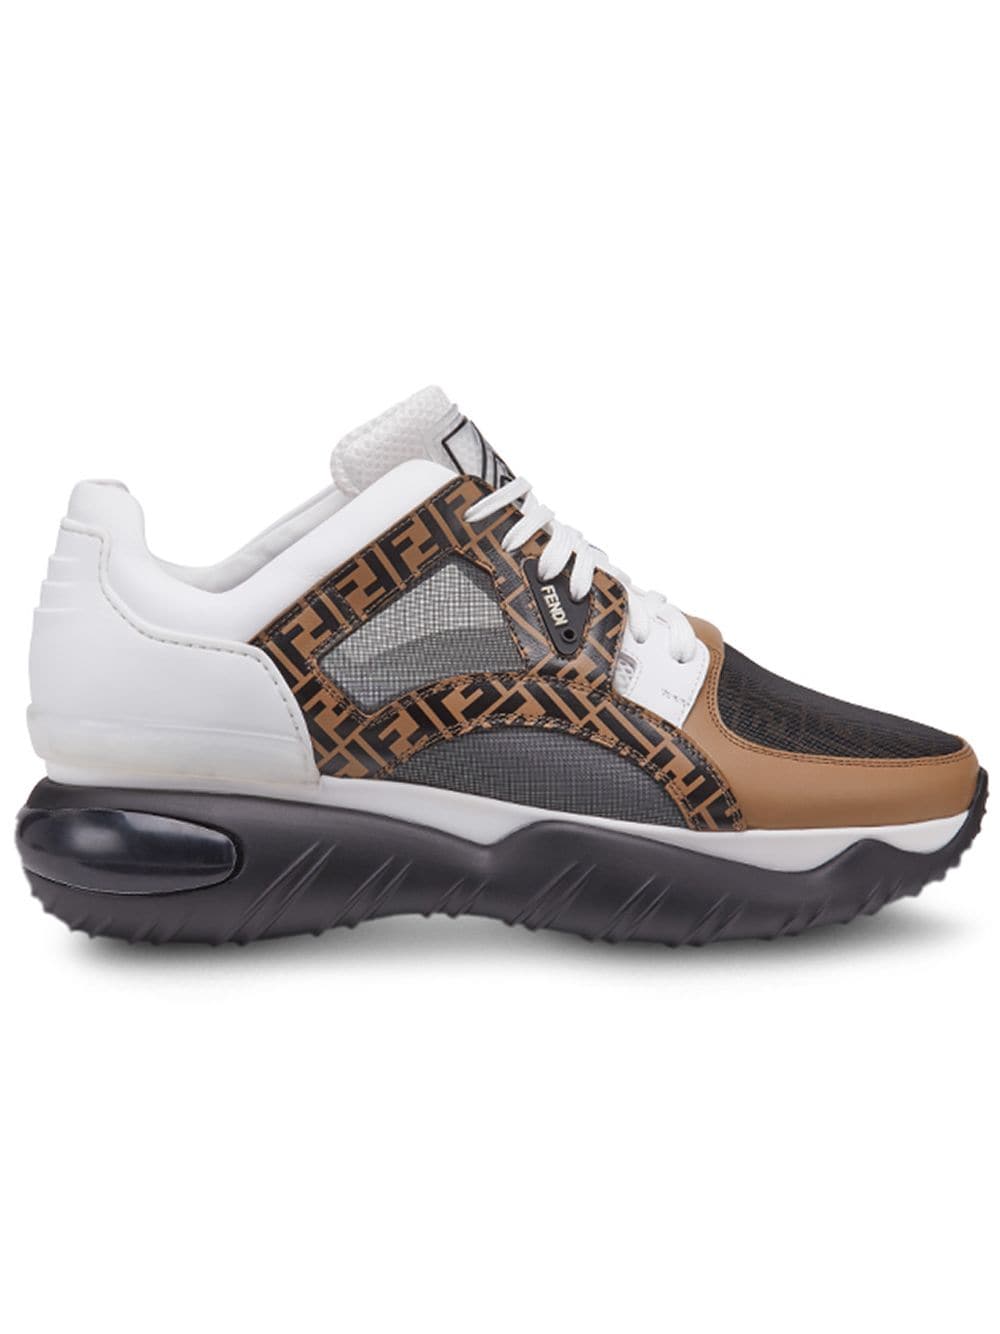 Fendi Fendi Chunky Monogram Runner Sneakers - Black/white/nut ...